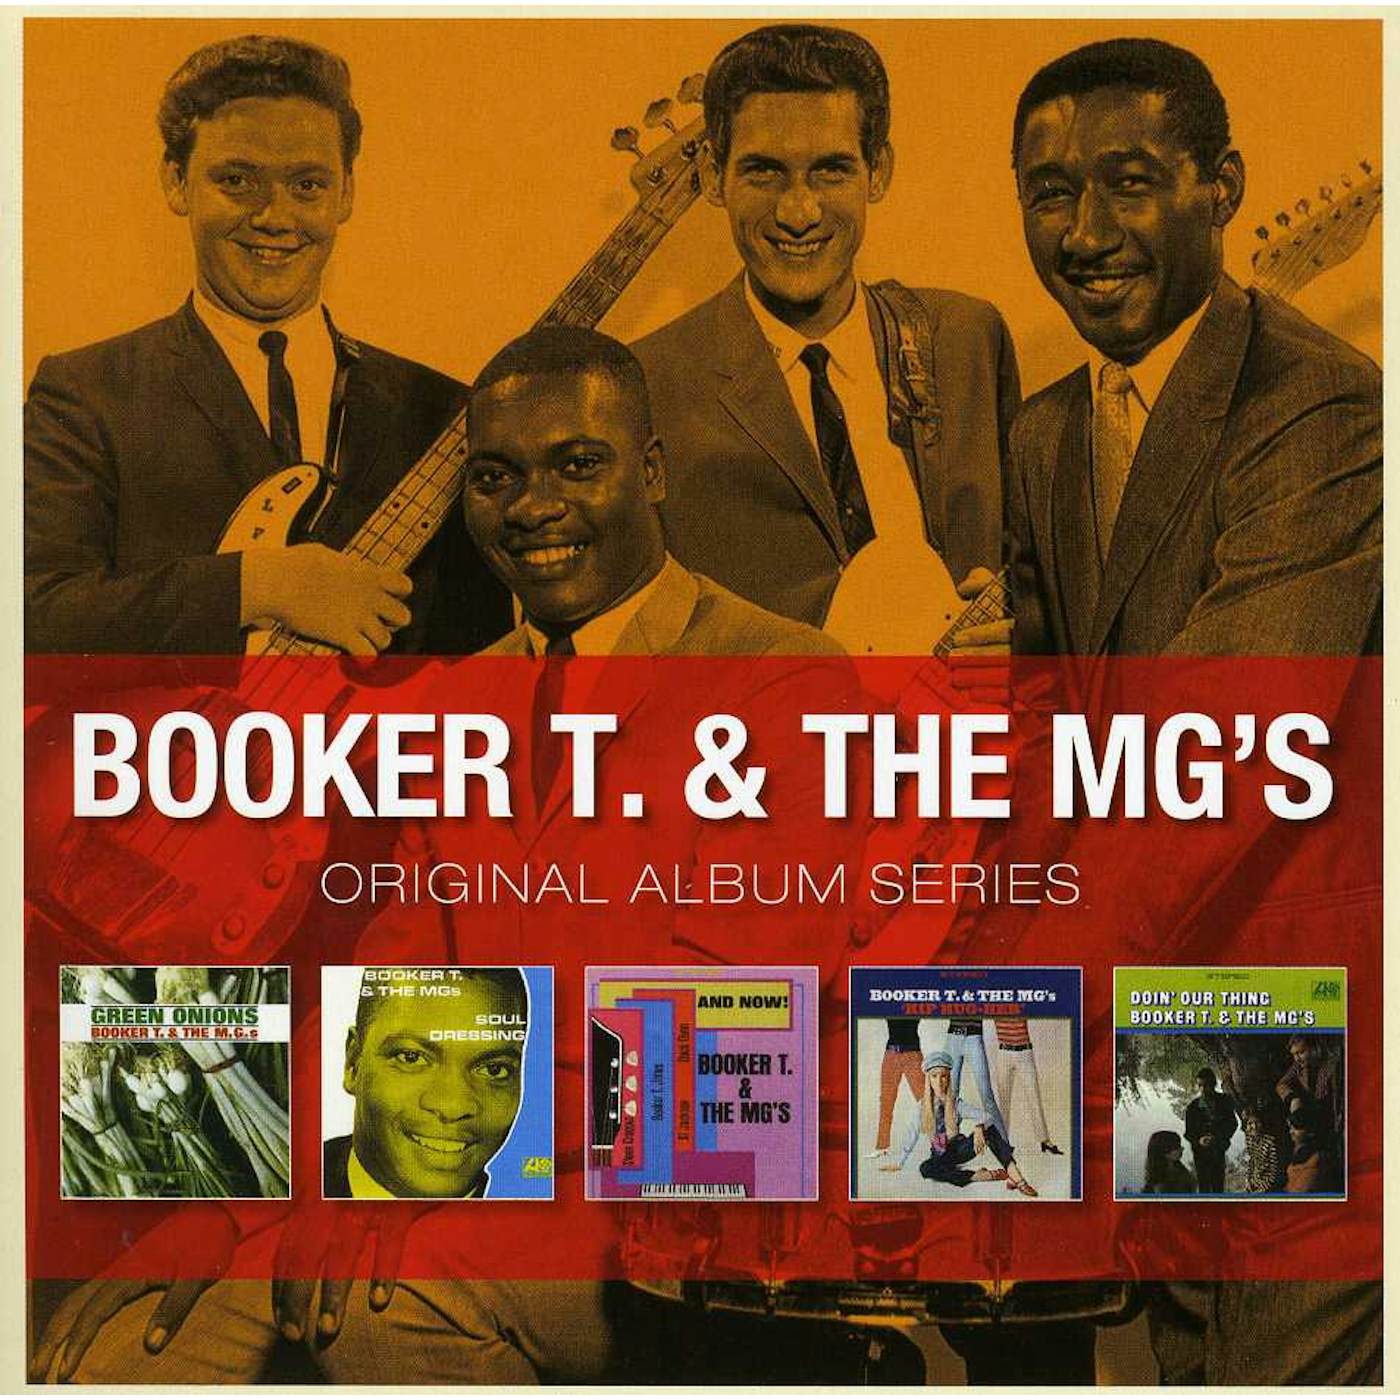 Booker T. & the M.G.'s ORIGINAL ALBUM SERIES CD